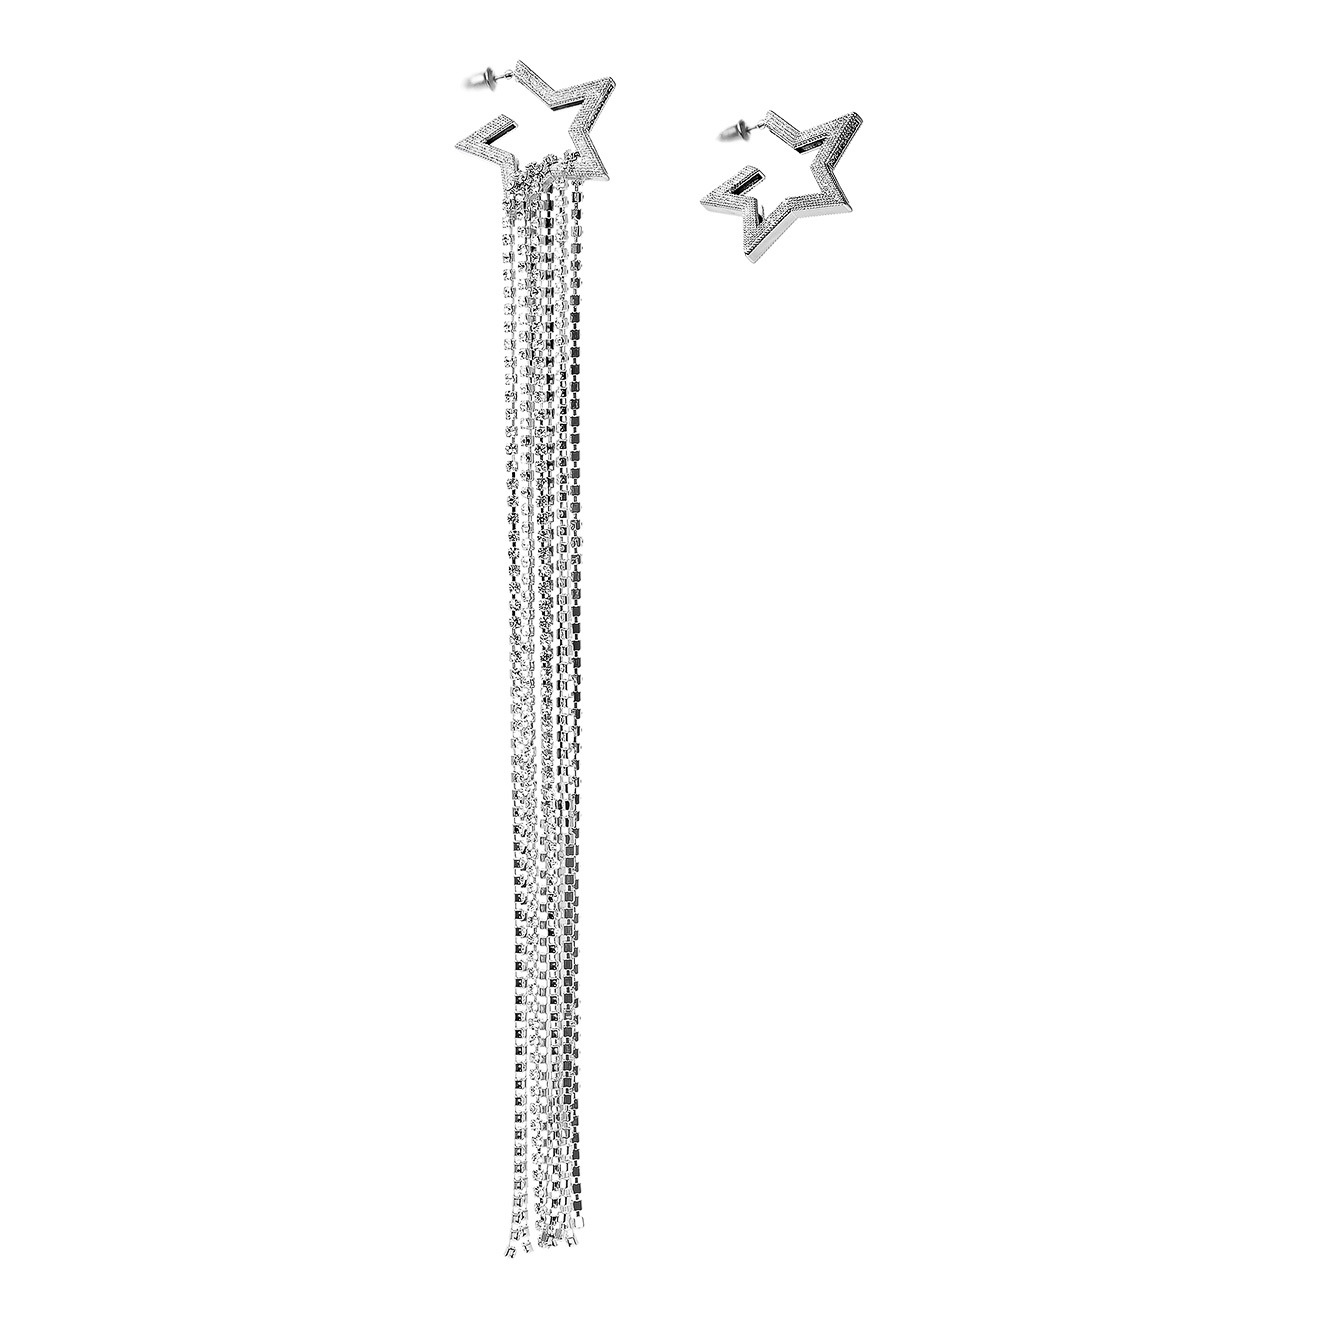 Herald Percy Асимметричные серьги-звезды с подвесками-дорожками асимметричные серьги с подвесками с эффектом состаривания